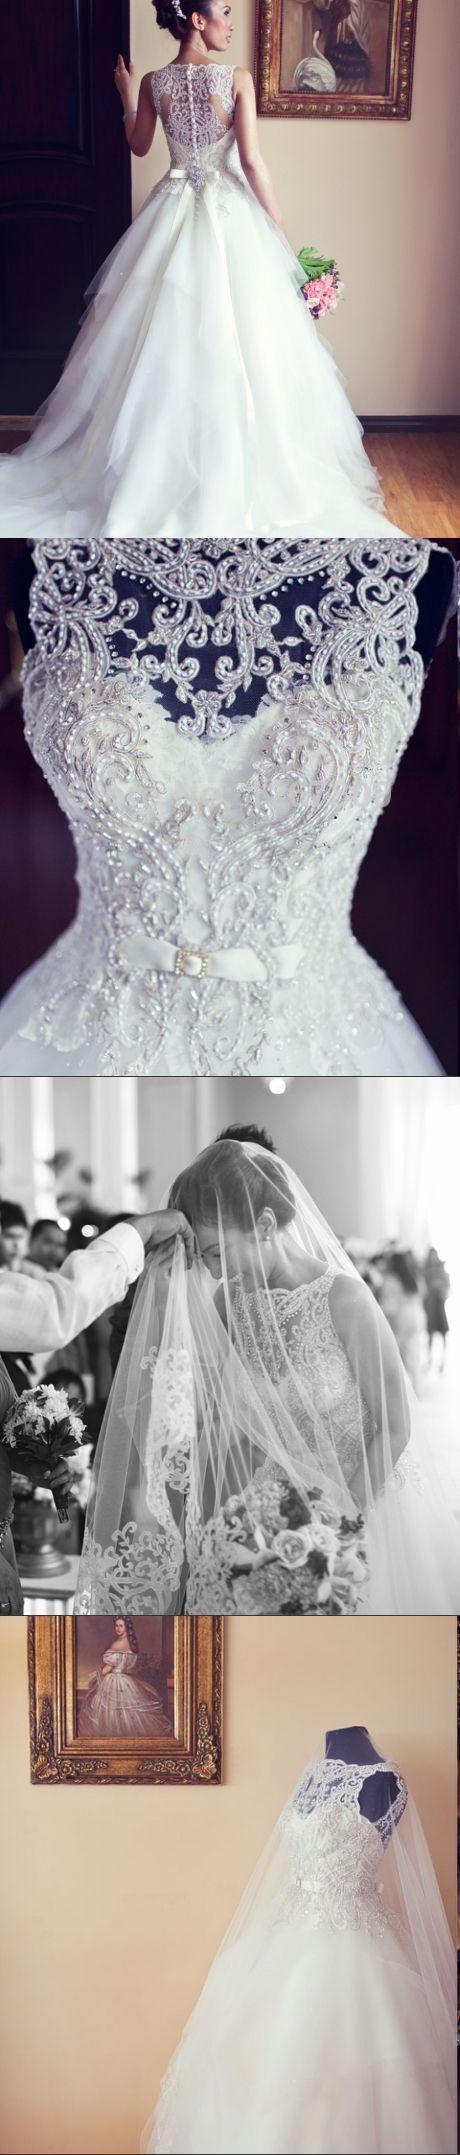 Mariage - Flare White Wedding Dress,Beading Sleeveless Bridal Dress,See Through Back Wedding Dress